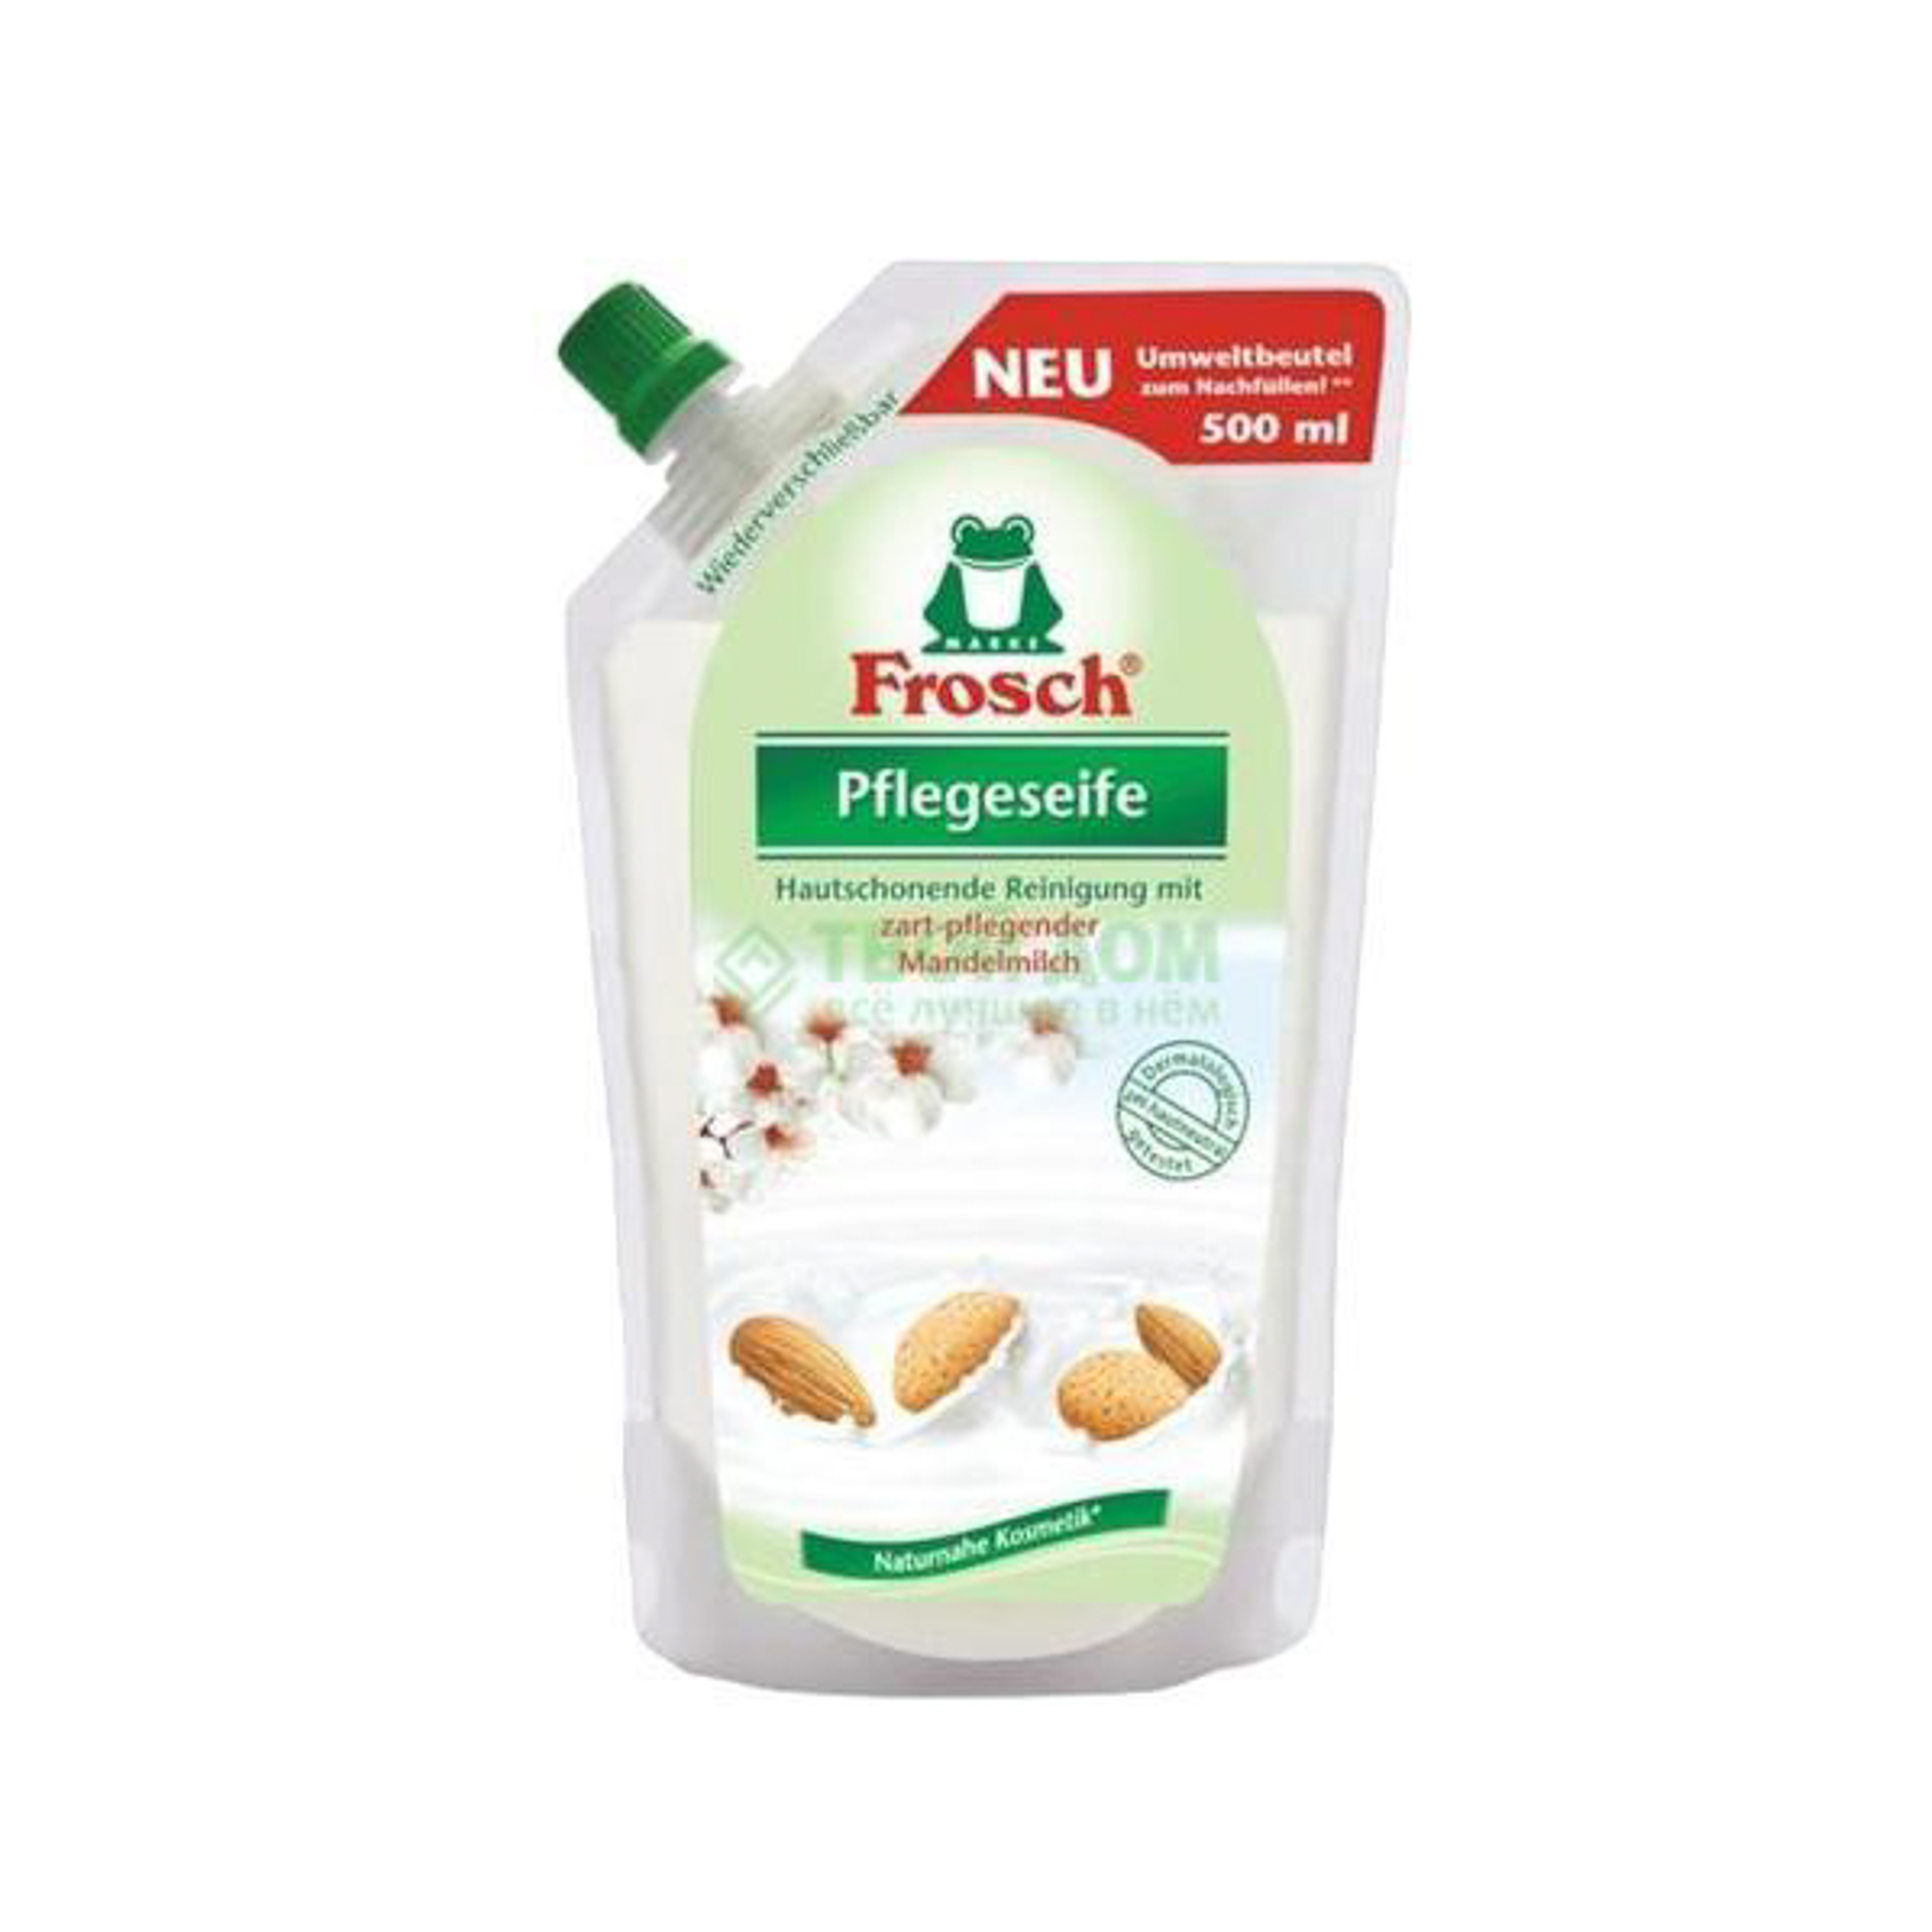 Мыло для рук Frosch Ухаживающее Запаска миндальное молочко (500мл)